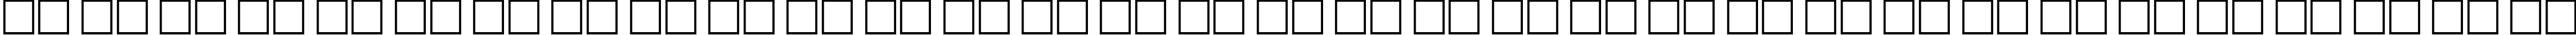 Пример написания русского алфавита шрифтом Time Roman80B